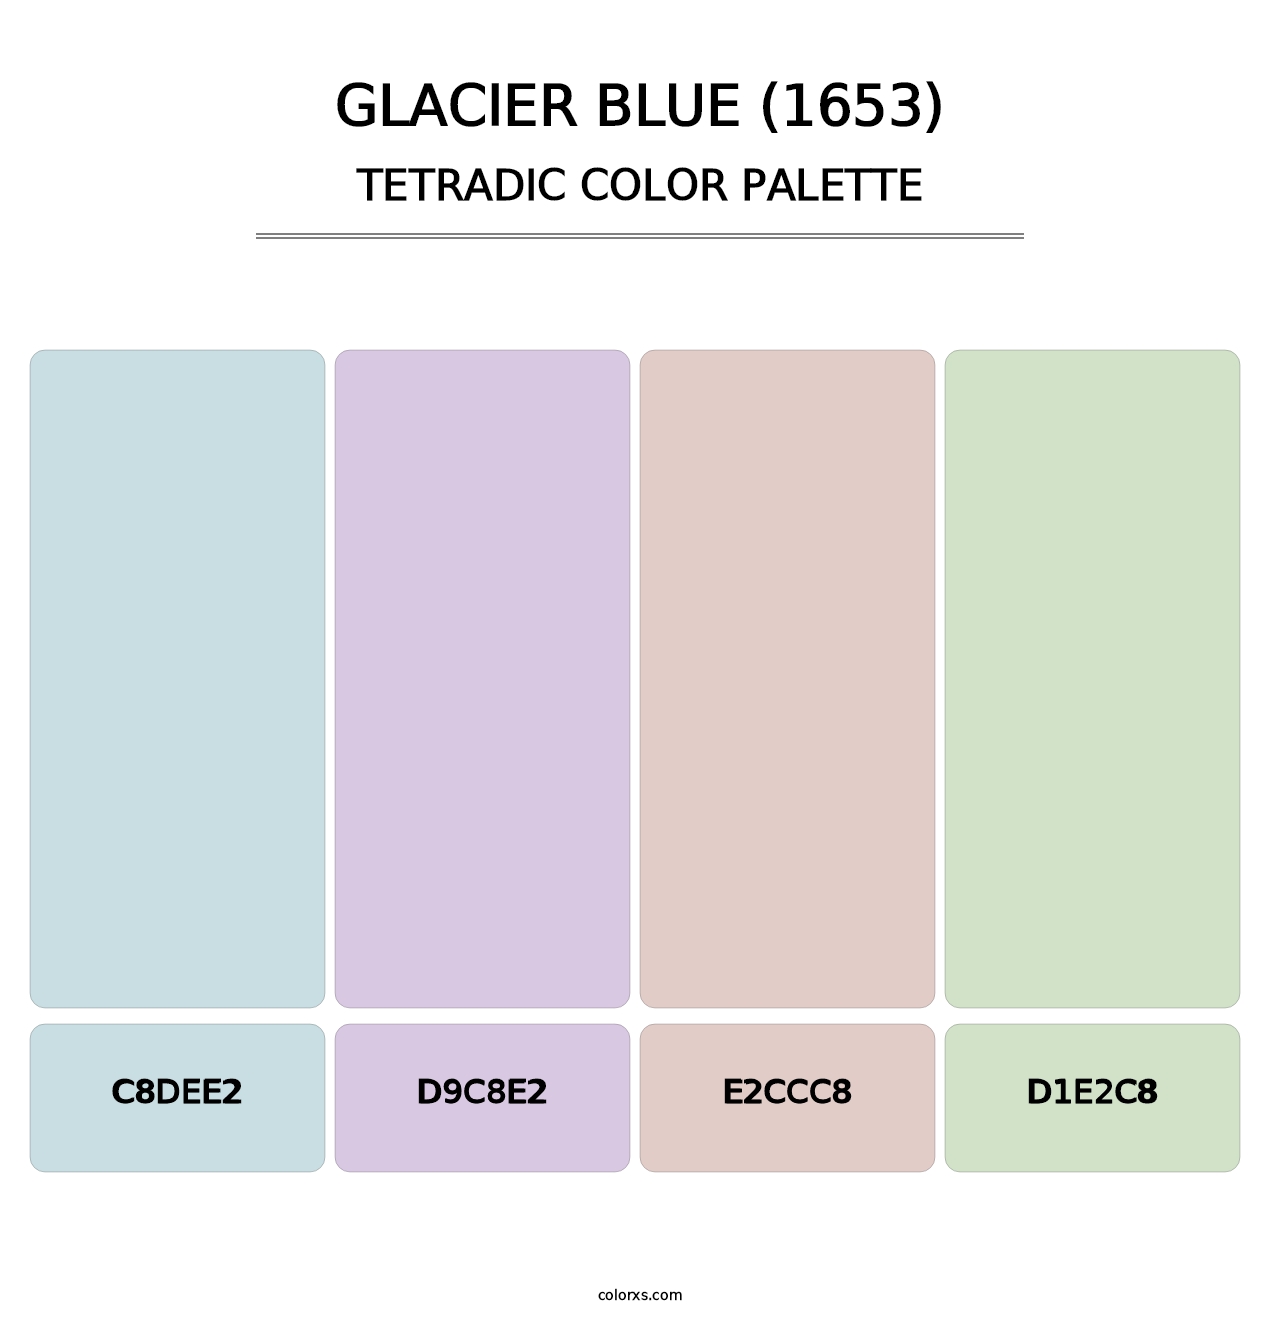 Glacier Blue (1653) - Tetradic Color Palette